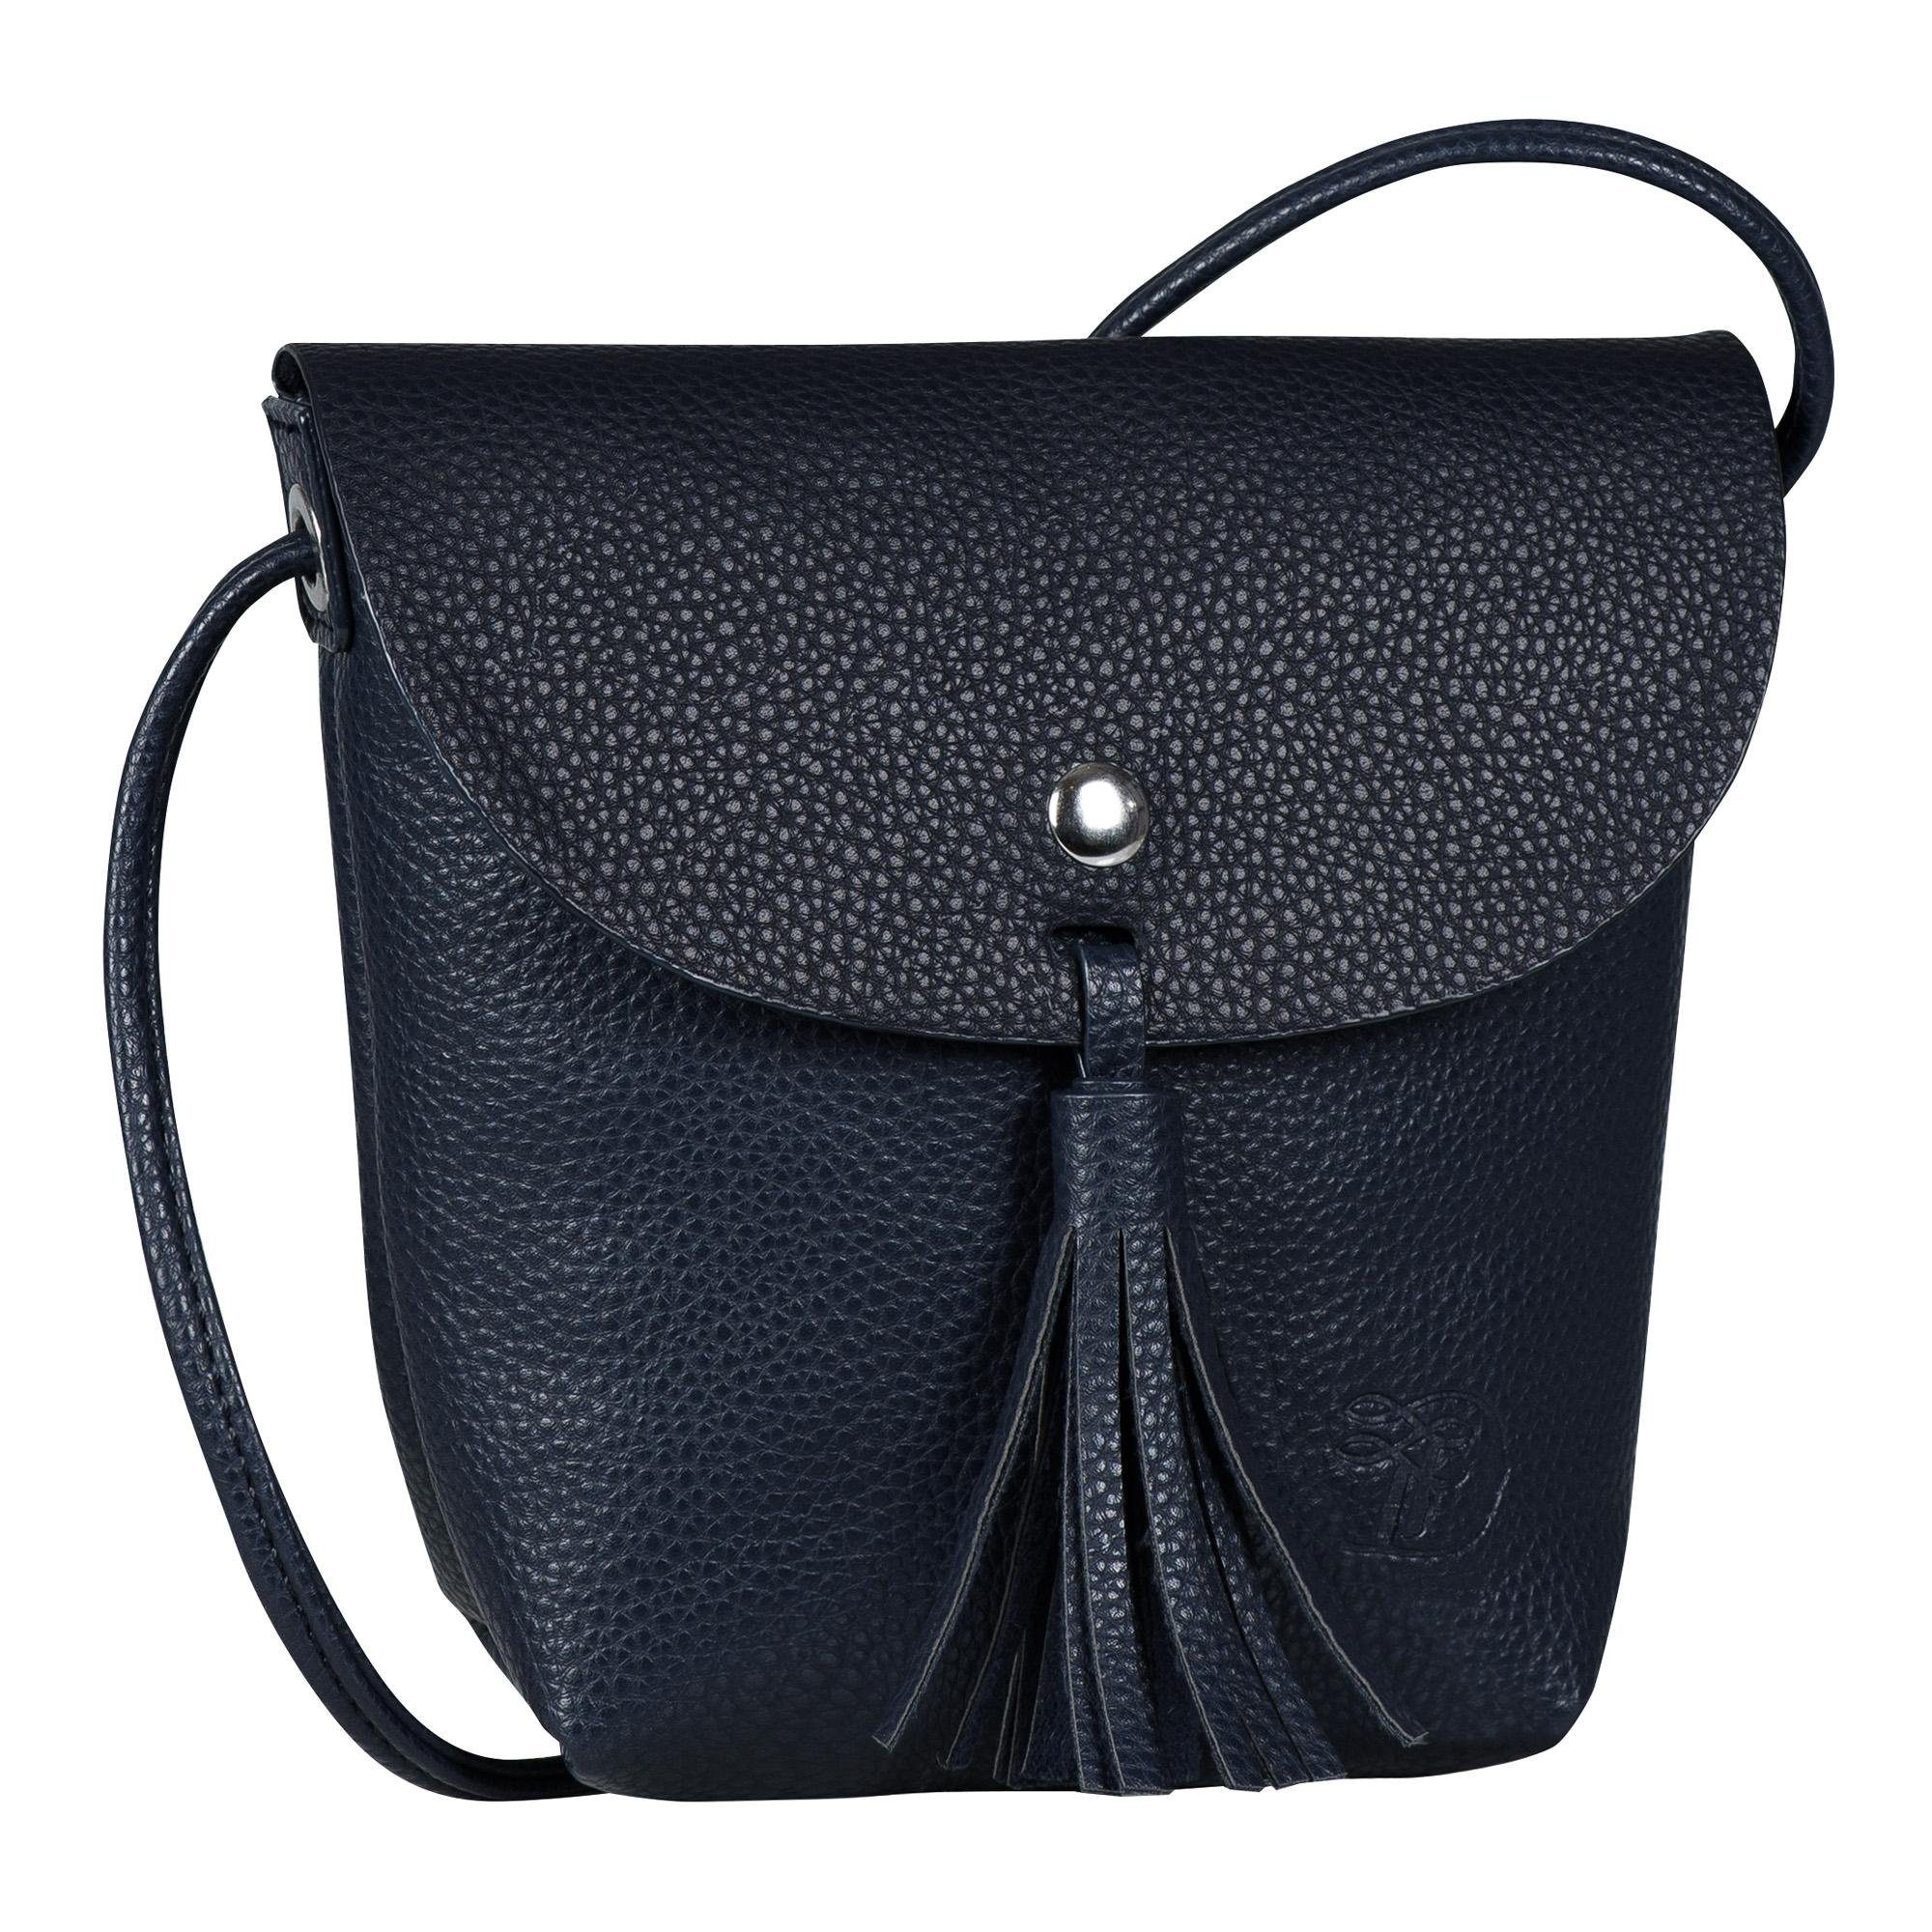 Handtasche in blau online kaufen | OTTO